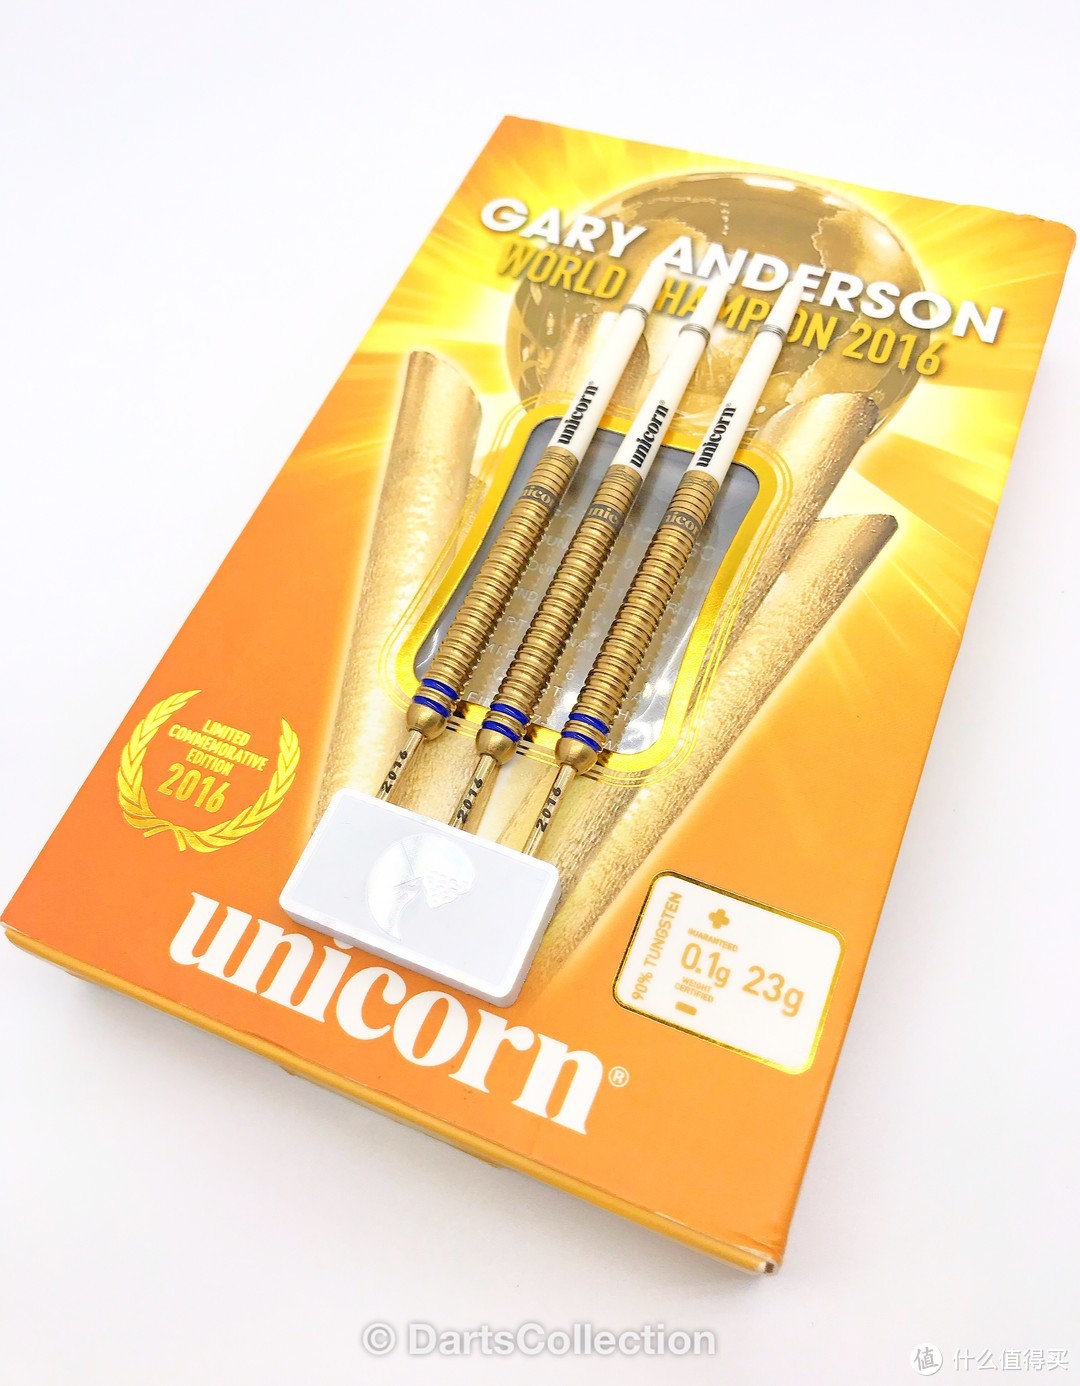 飞镖收藏第三十期—Unicorn Gary Anderson 2016 世锦赛冠军限量版